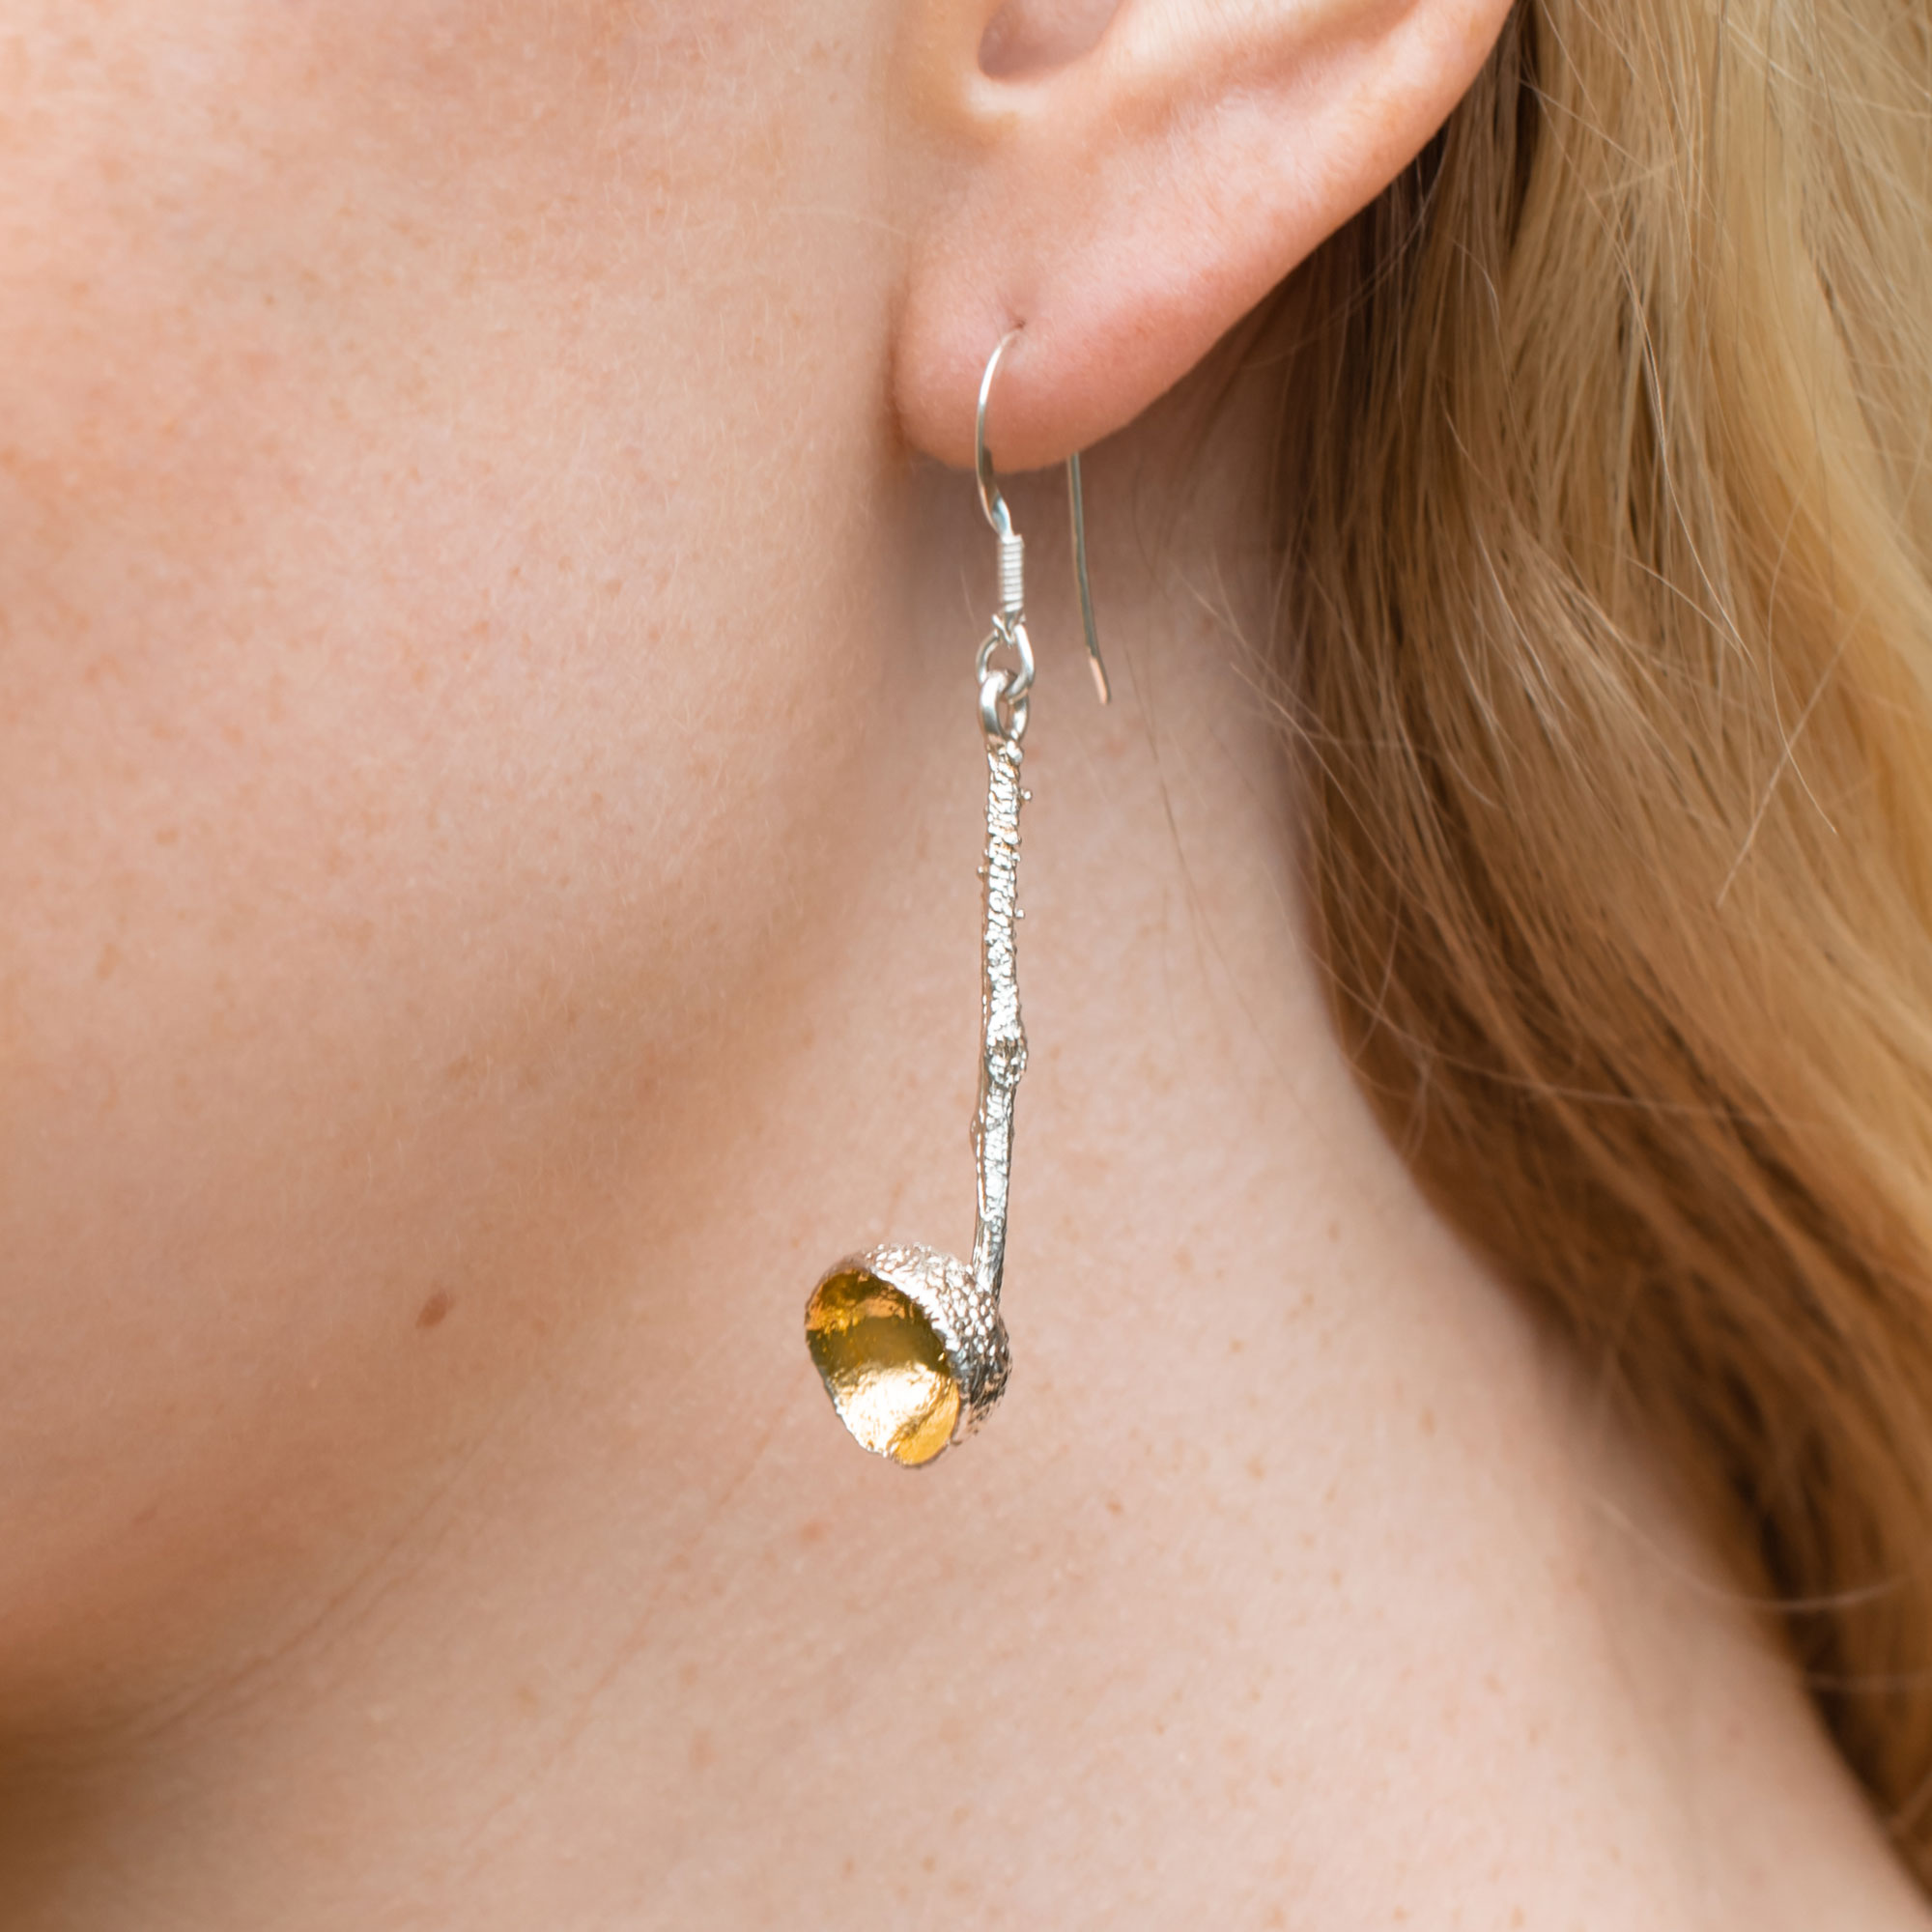 Handmade jewelry Chain link sterling silver earrings Dangle earrings Recycled silver Textured earrings Drop earrings